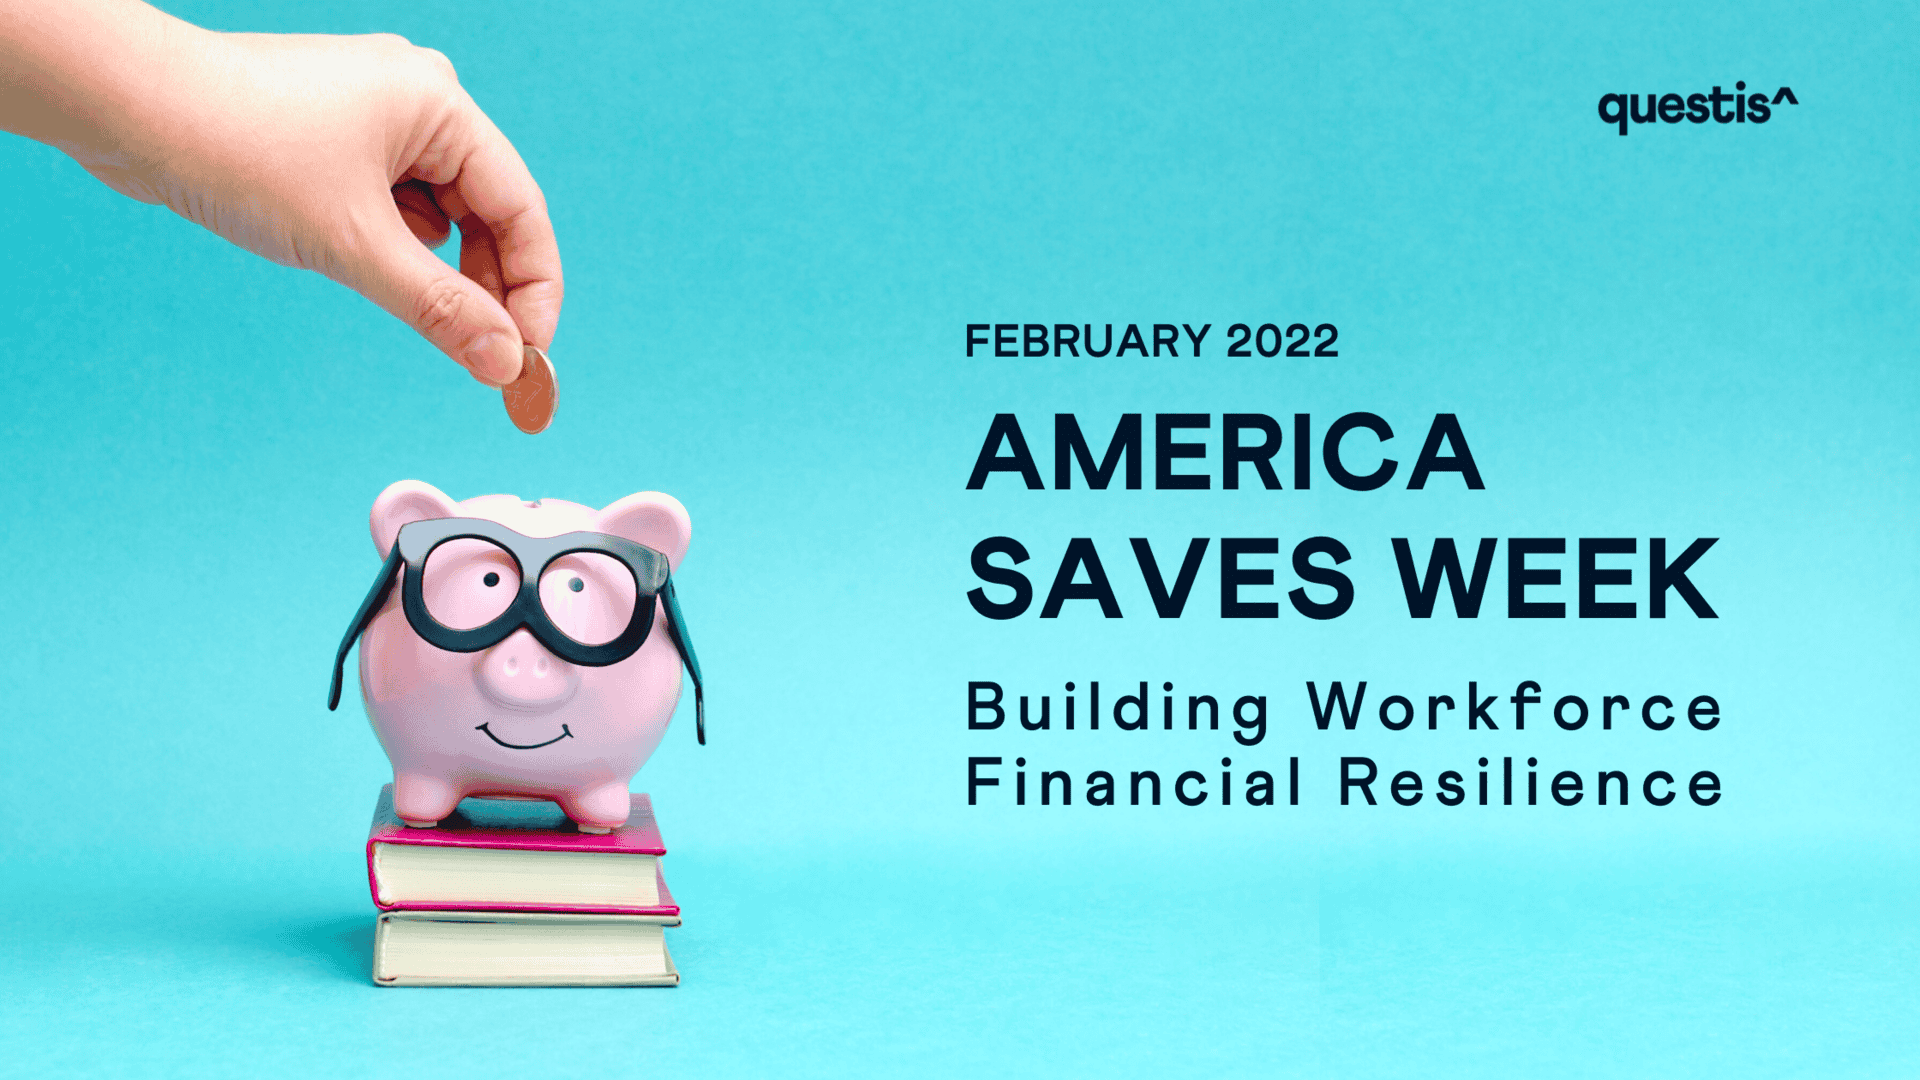 America Saves Week 2022: Building Workforce Financial Resilience